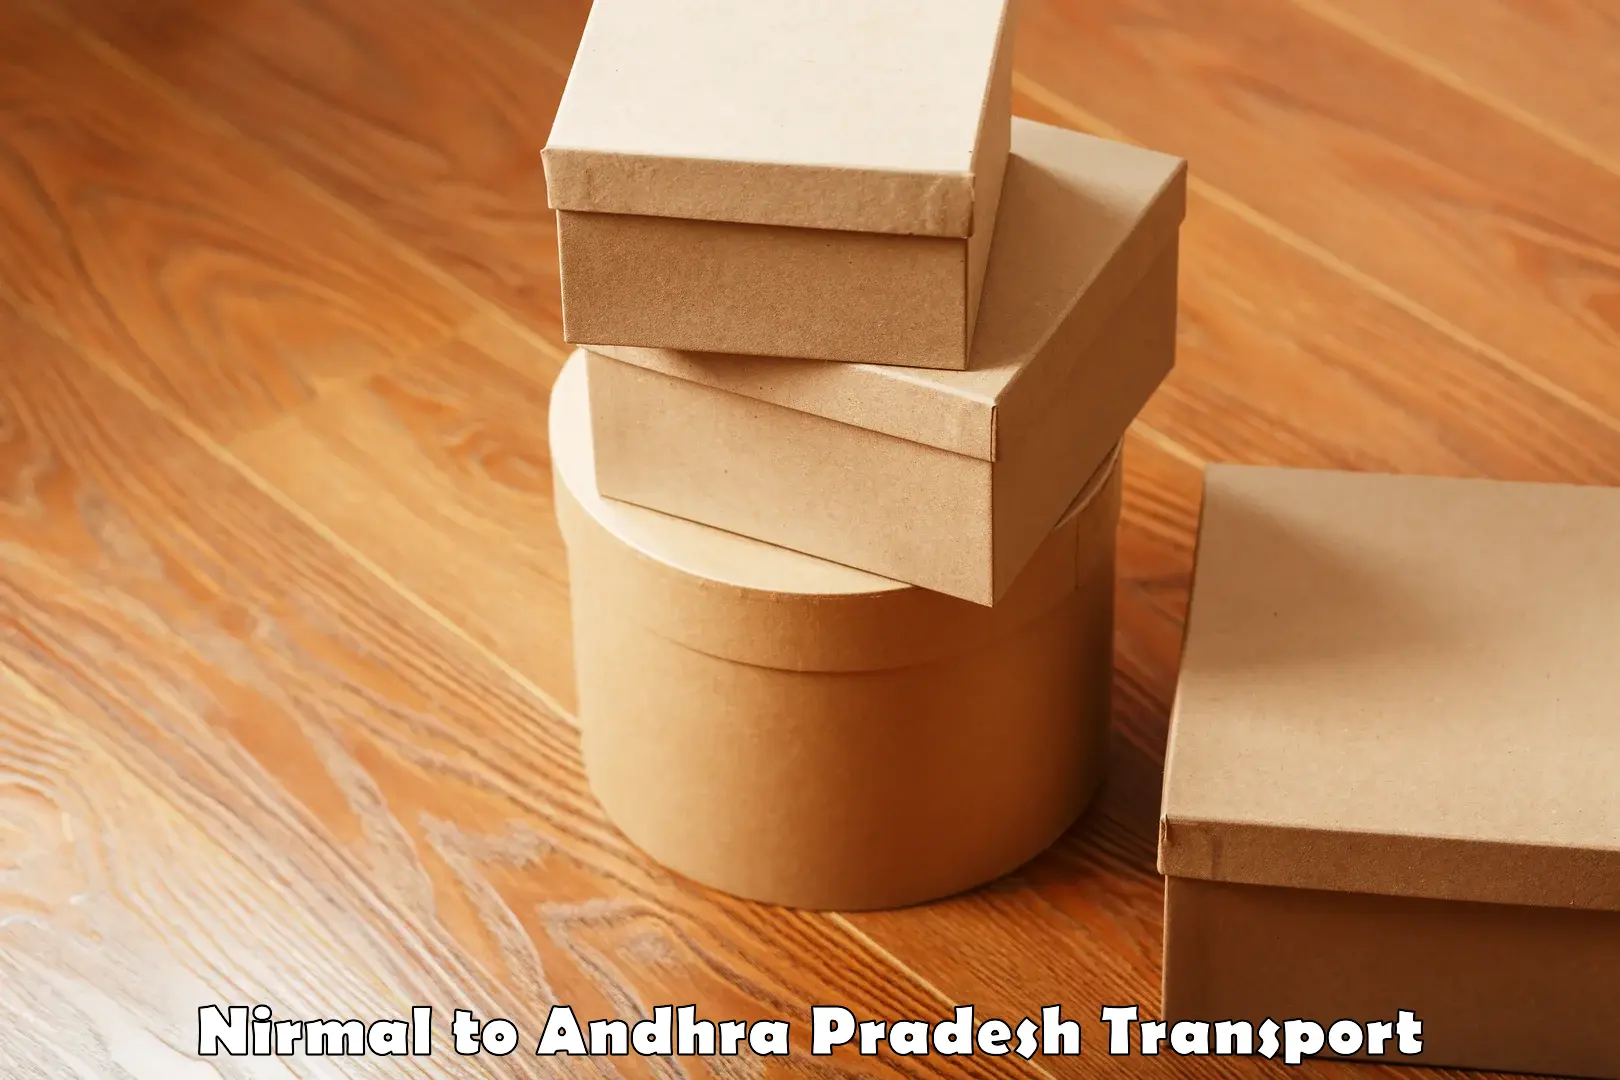 Furniture transport service Nirmal to Andhra Pradesh